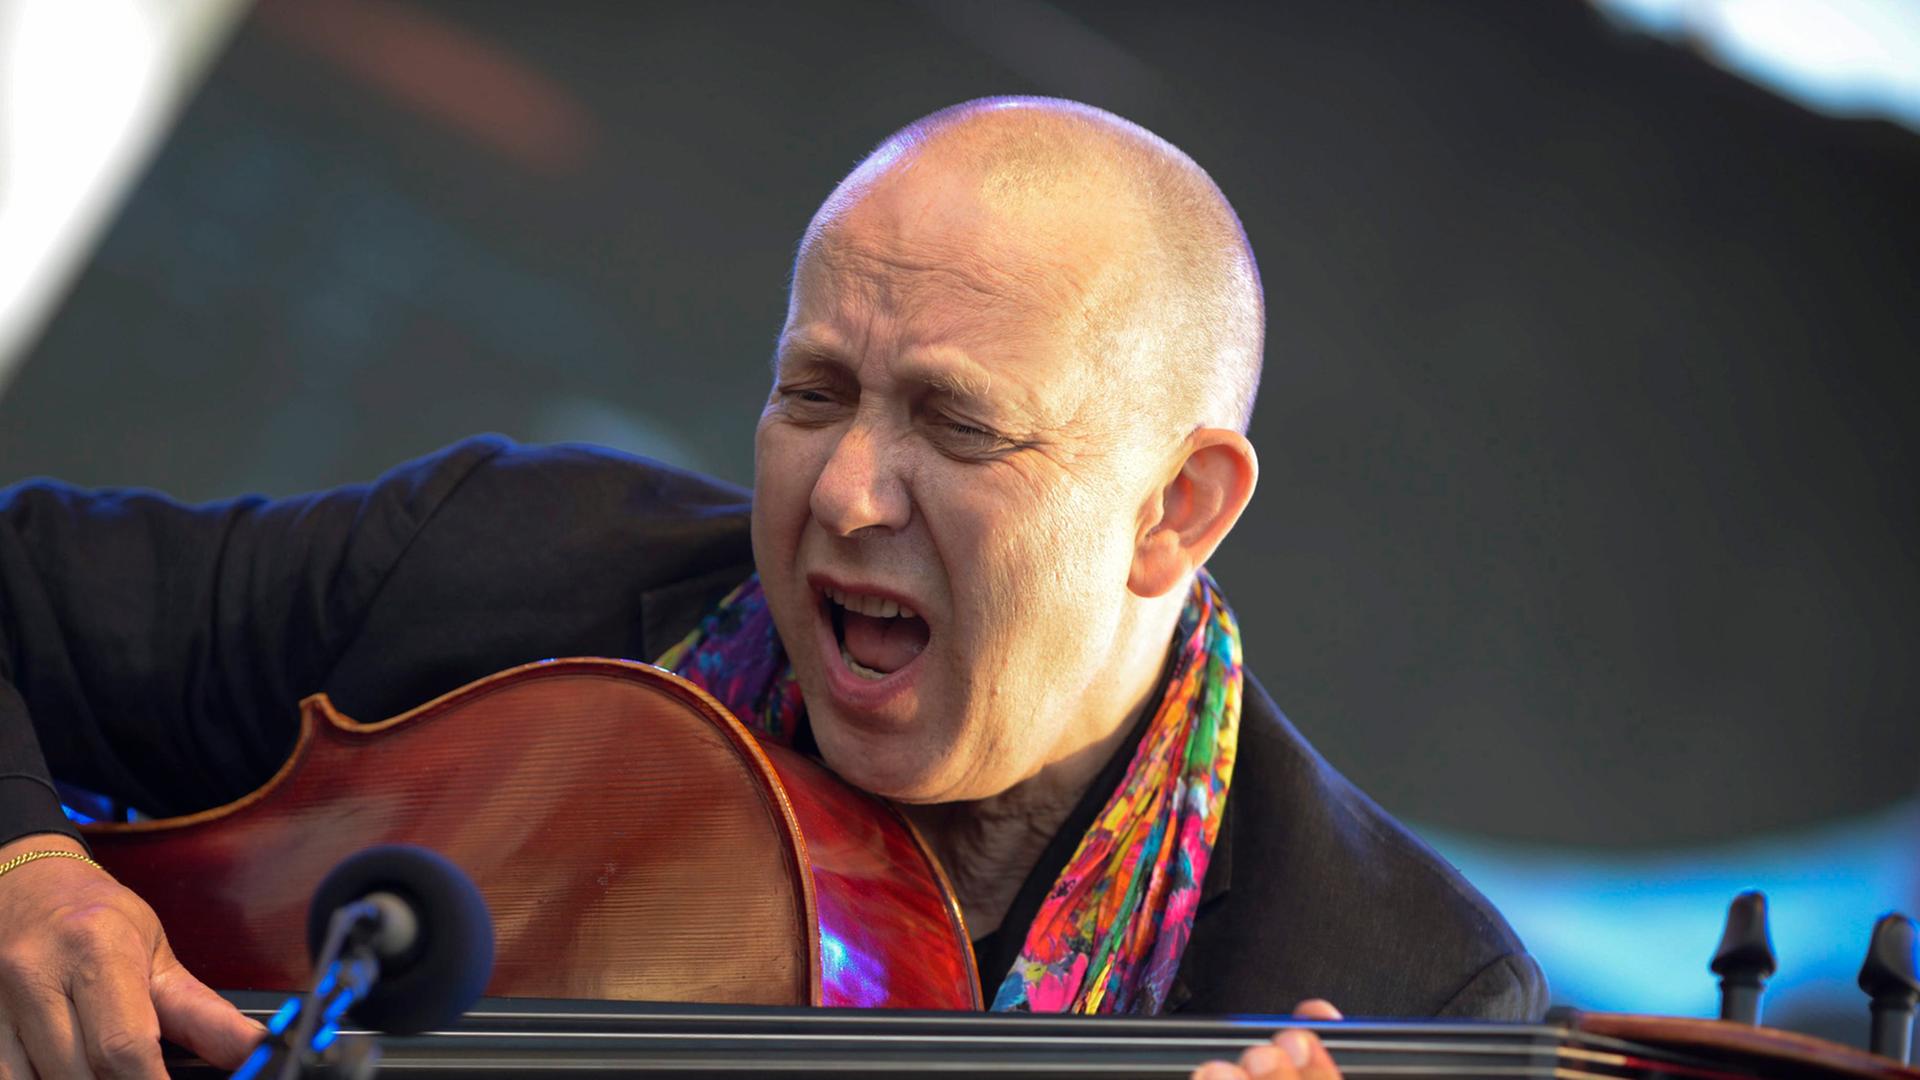 Der holländische Musiker Ernst Reijseger spielt auf einem Cello.